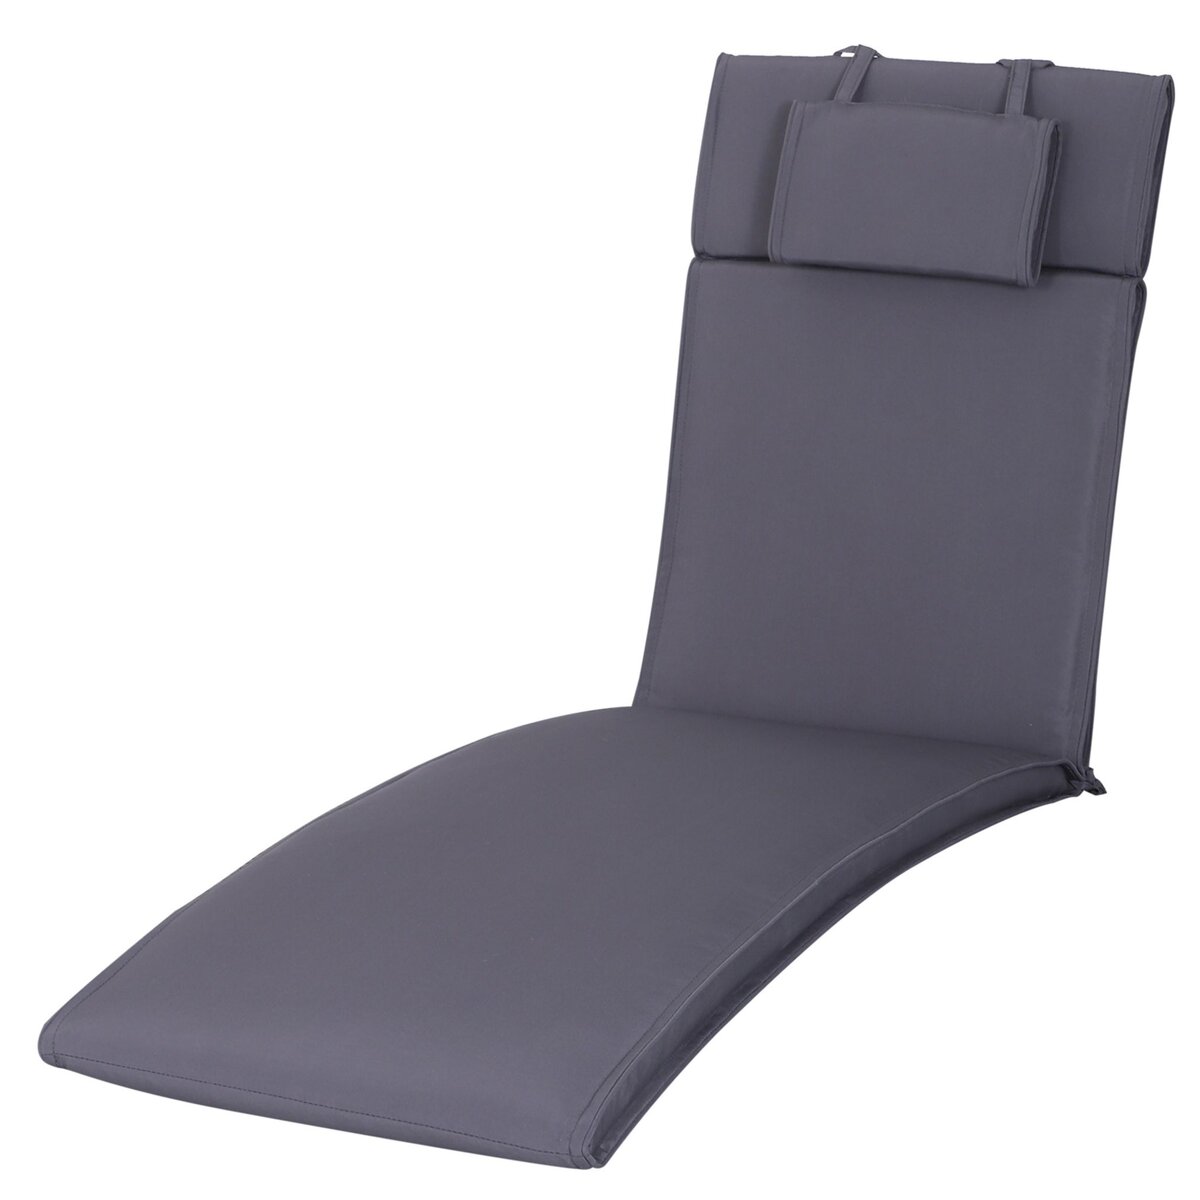 OUTSUNNY Outsunny Matelas bain de soleil - coussin de transat - matelas de chaise longue - dim. 198L x 53l x 5H cm - coussin zippé déhoussable - tétière, cordons d'attache - polyester gris